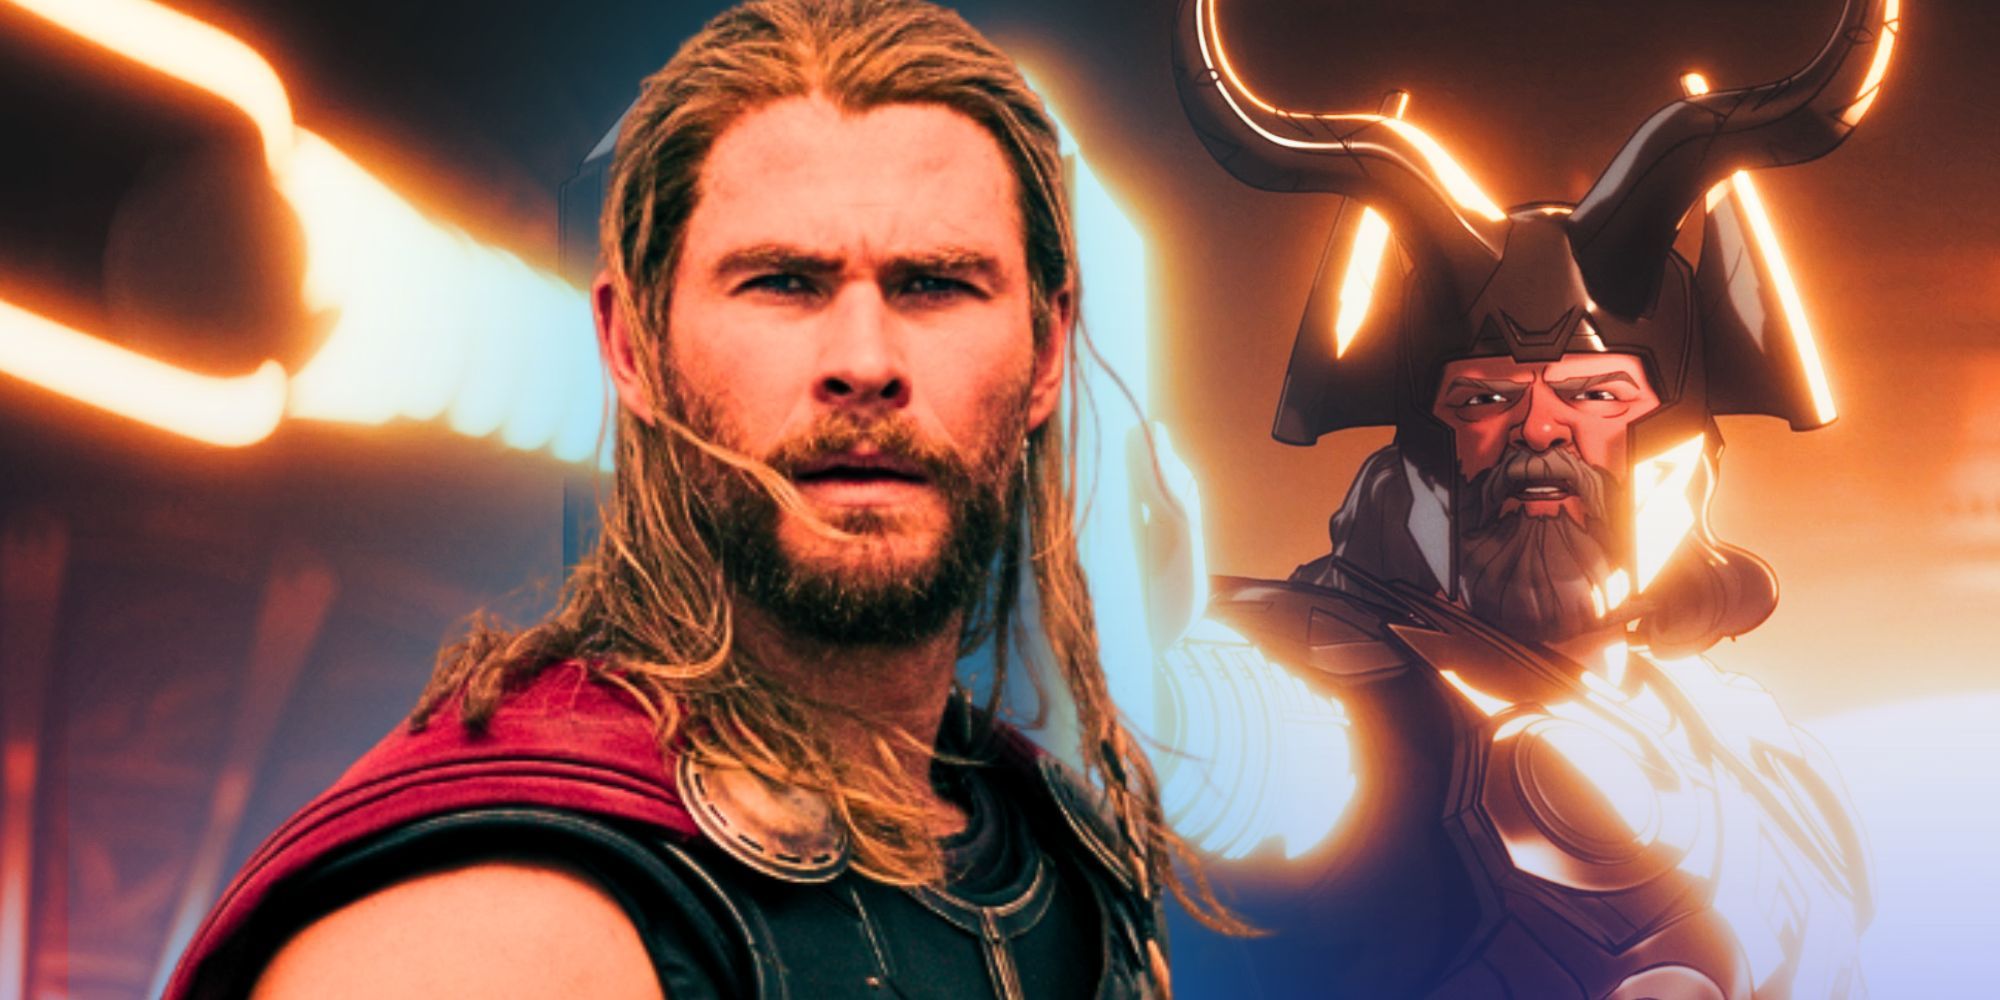 El MCU explica adecuadamente la verdadera razón por la que Odín despidió a Thor 12 años después de la primera película de Thor